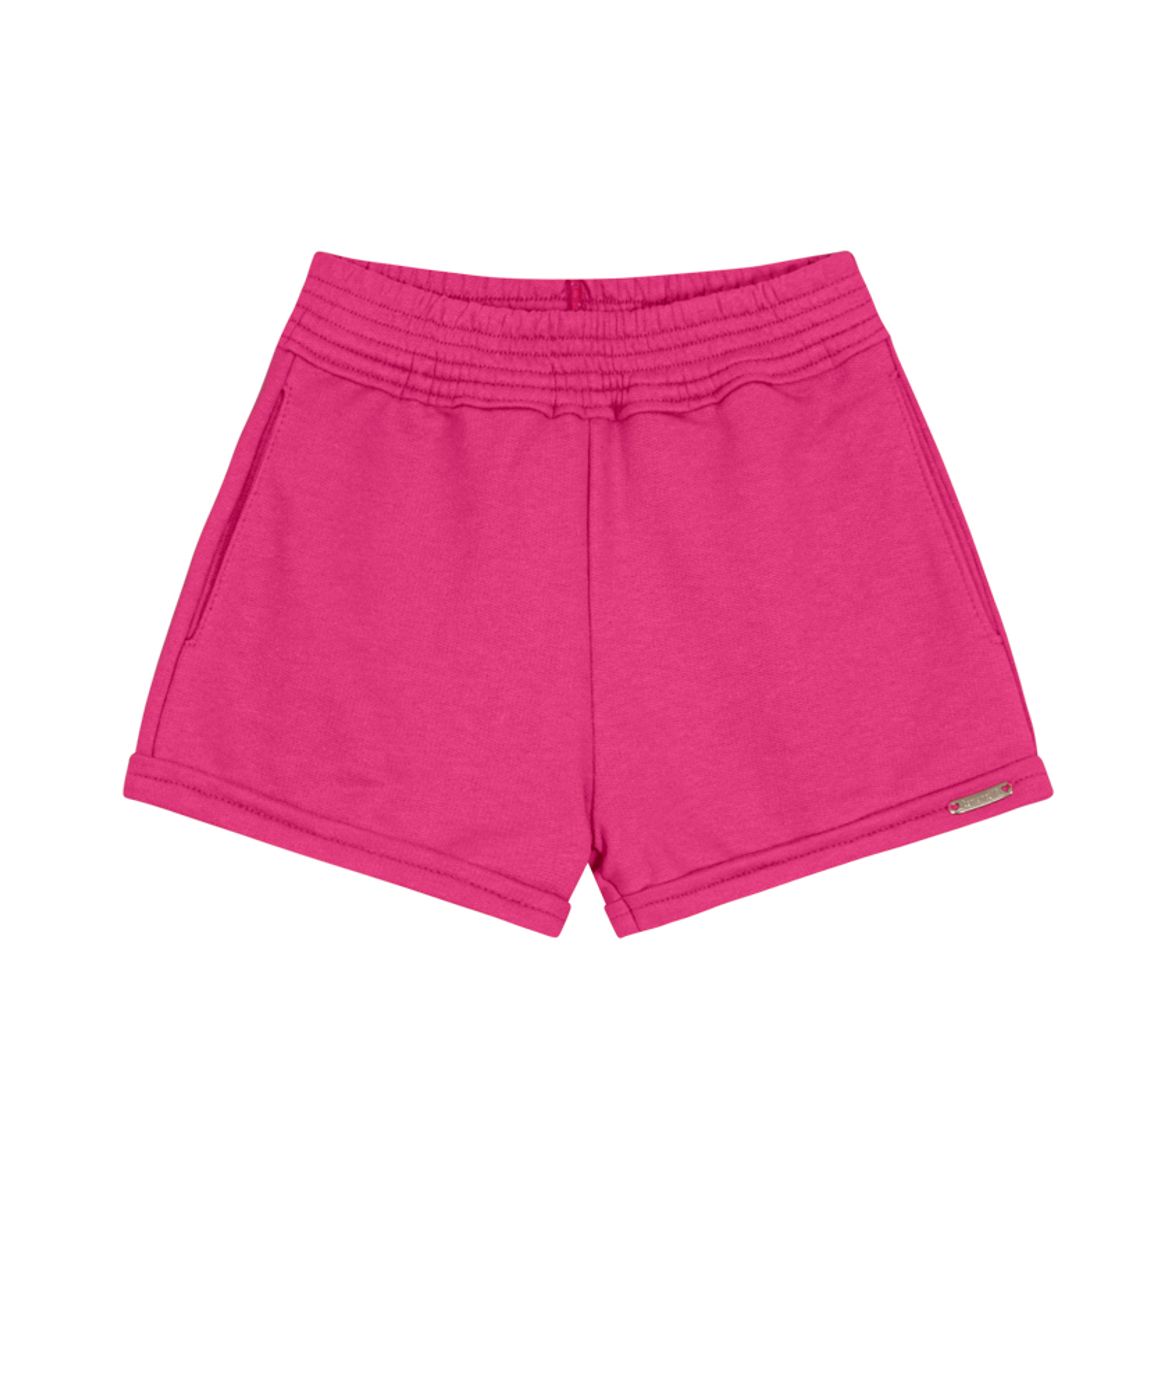 Shorts Hot Pants - Biliton-BILITON Petit Savoy Roupa Infantil Infantojuvenil